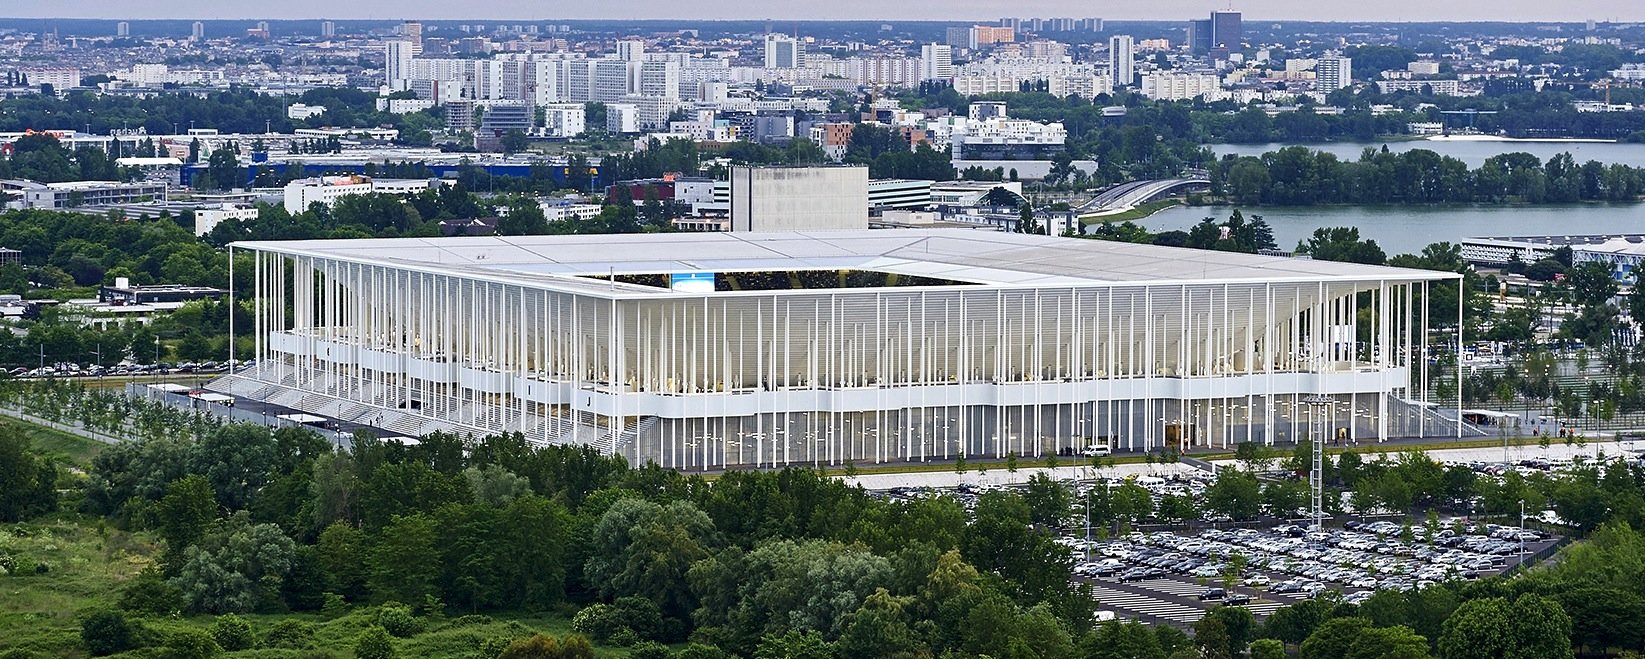 Das neue Stadion in Bordeaux wurde von den Baseler Architekten Herzog & de Meuron erbaut, die auch das Stadion des FC Bayern München entworfen haben. Ein Wald aus schlanken Säulen trägt elegant das leicht wirkende Dach des Fußballstadions. 